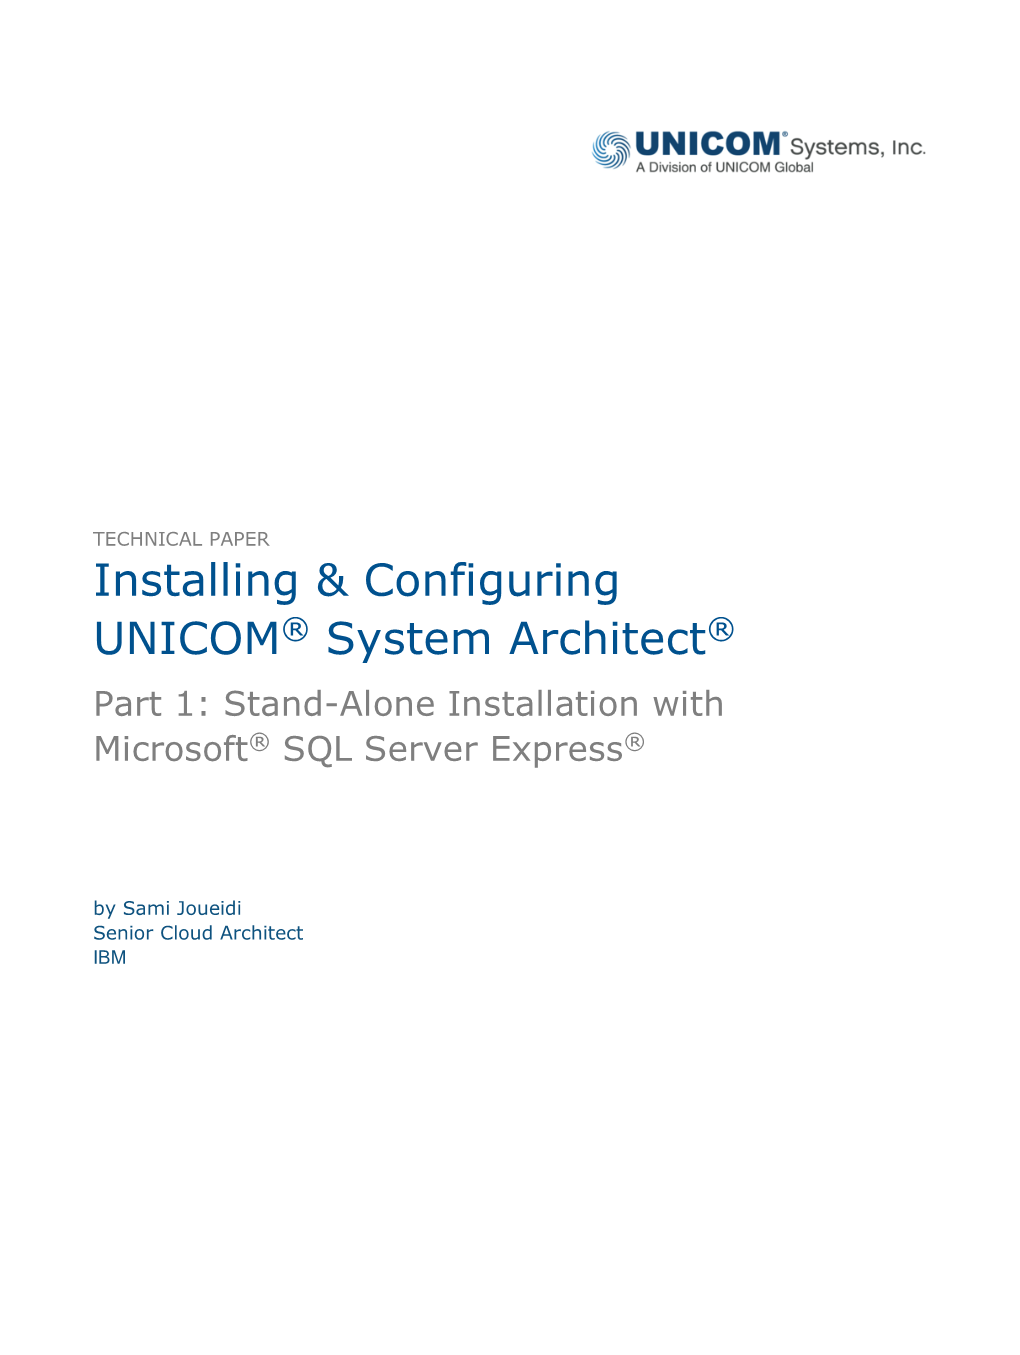 Installing & Configuring UNICOM® System Architect®